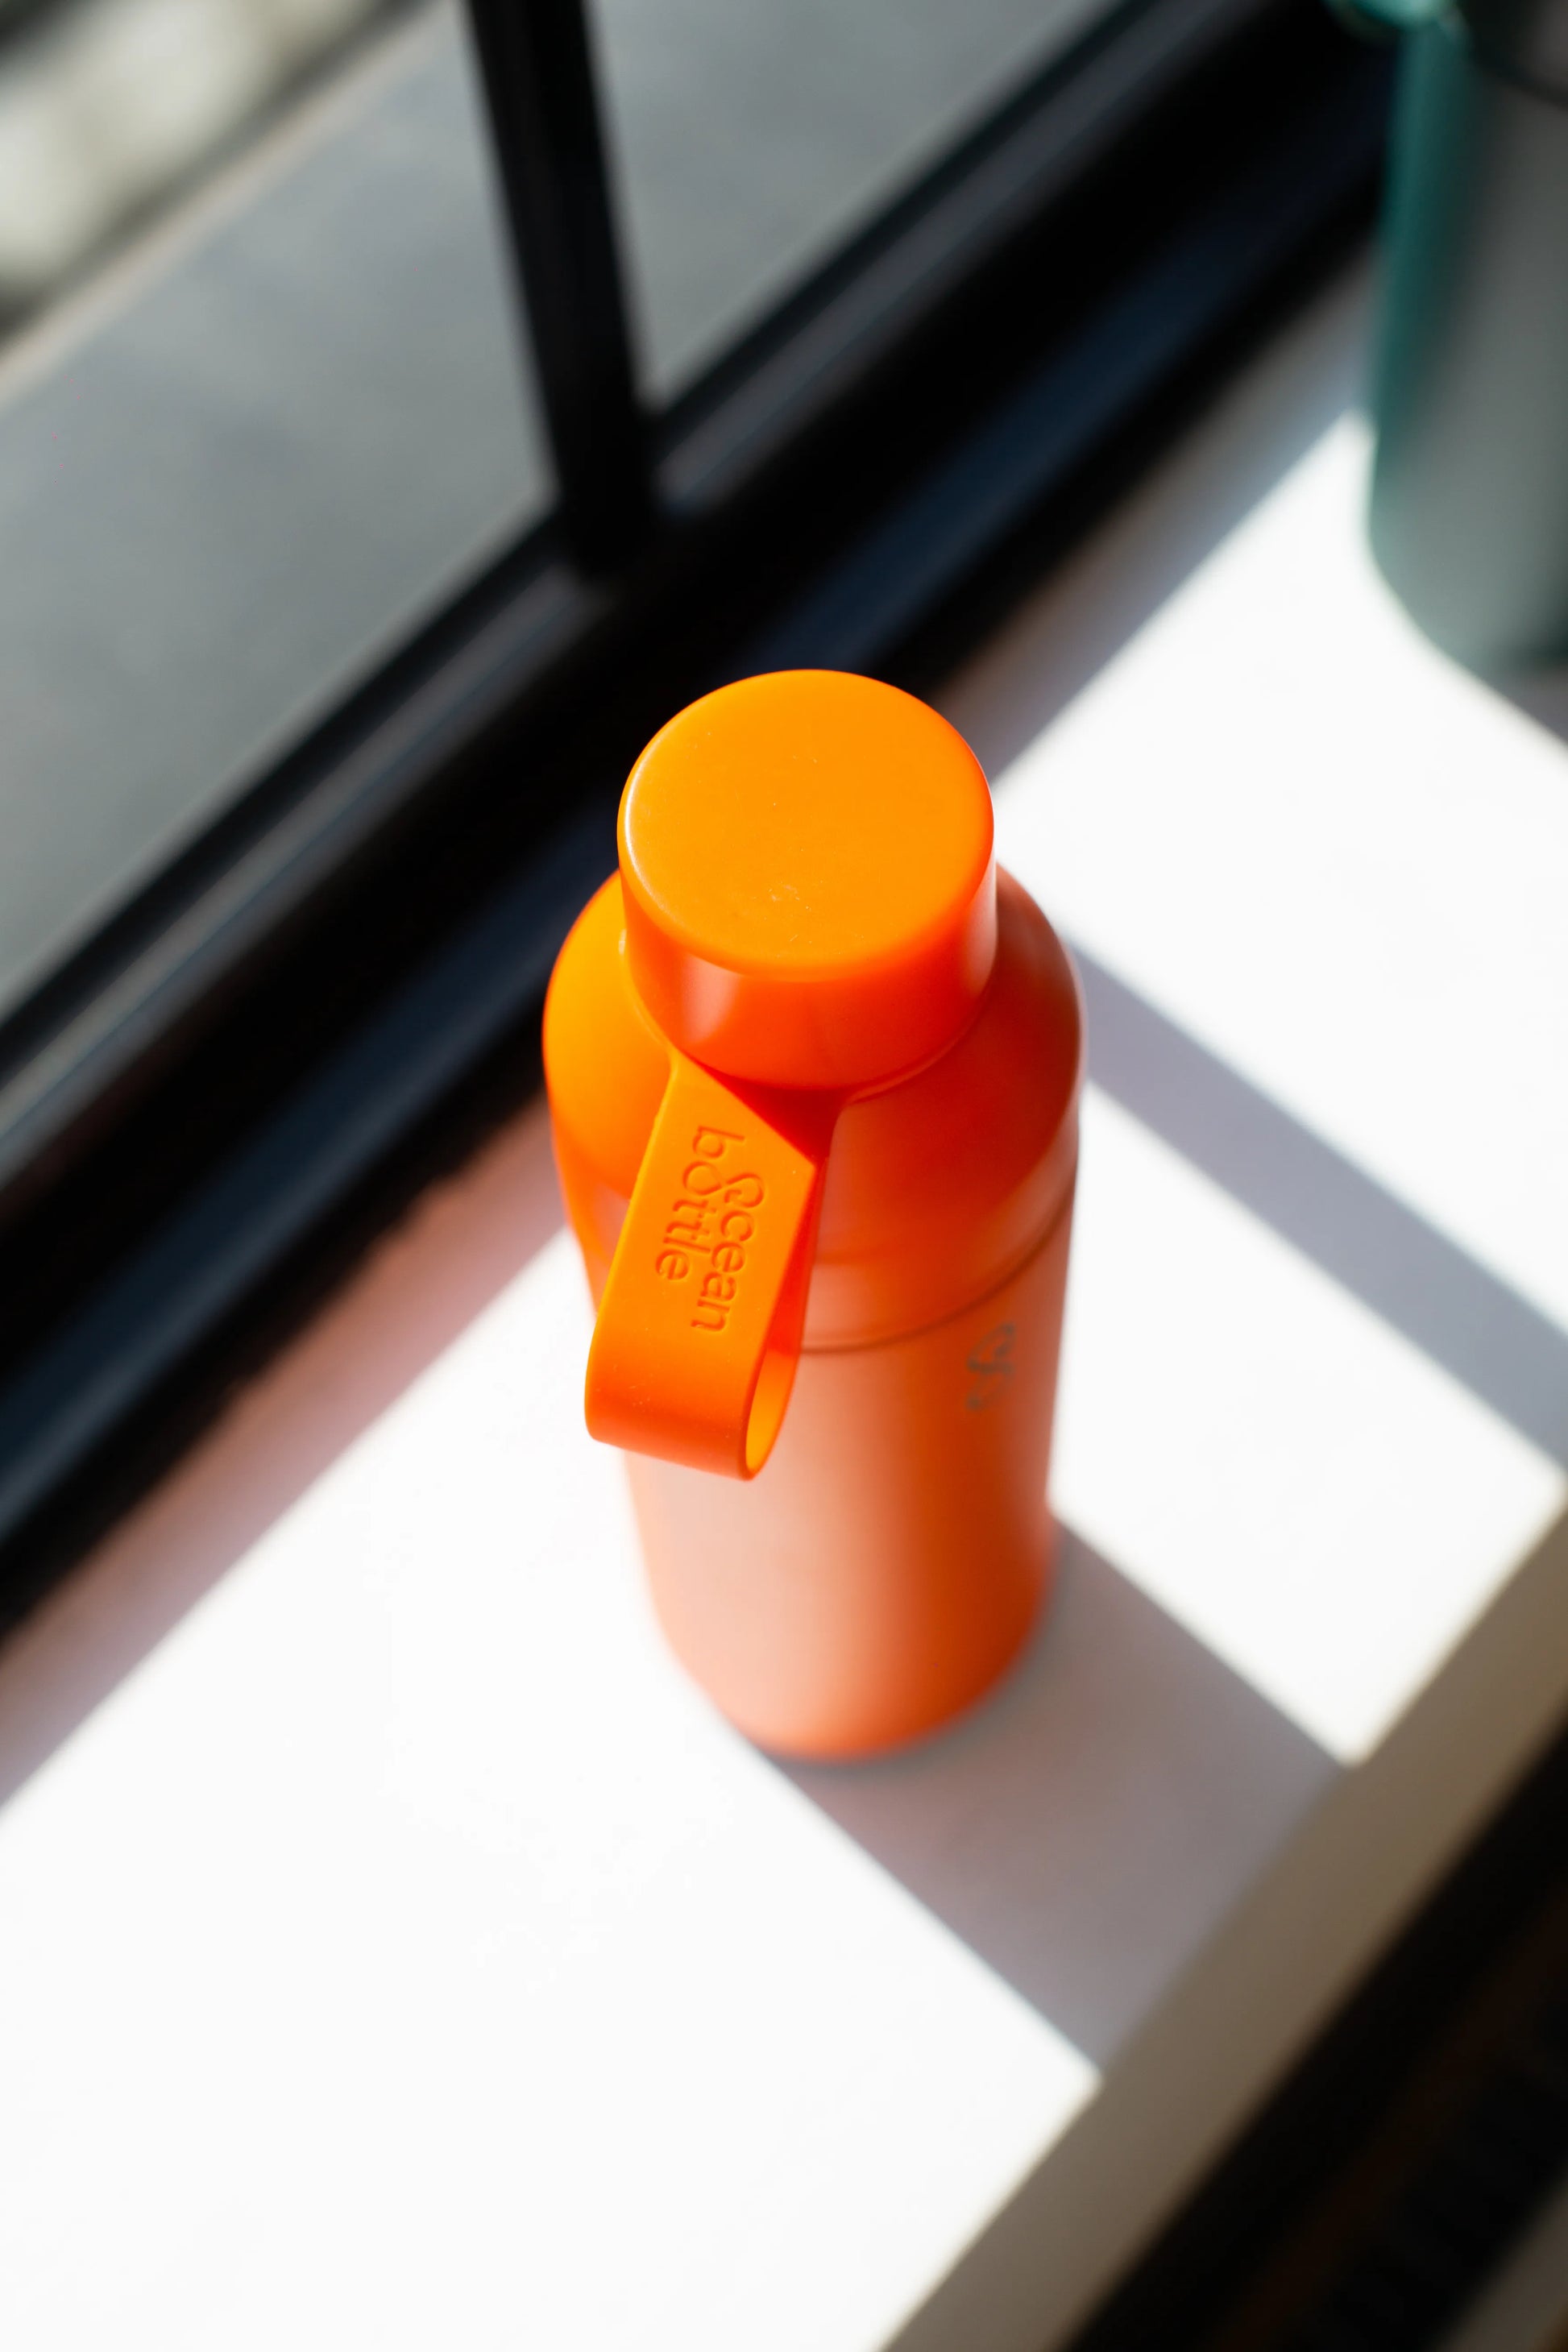 Top of an orange water bottle on a window sill.